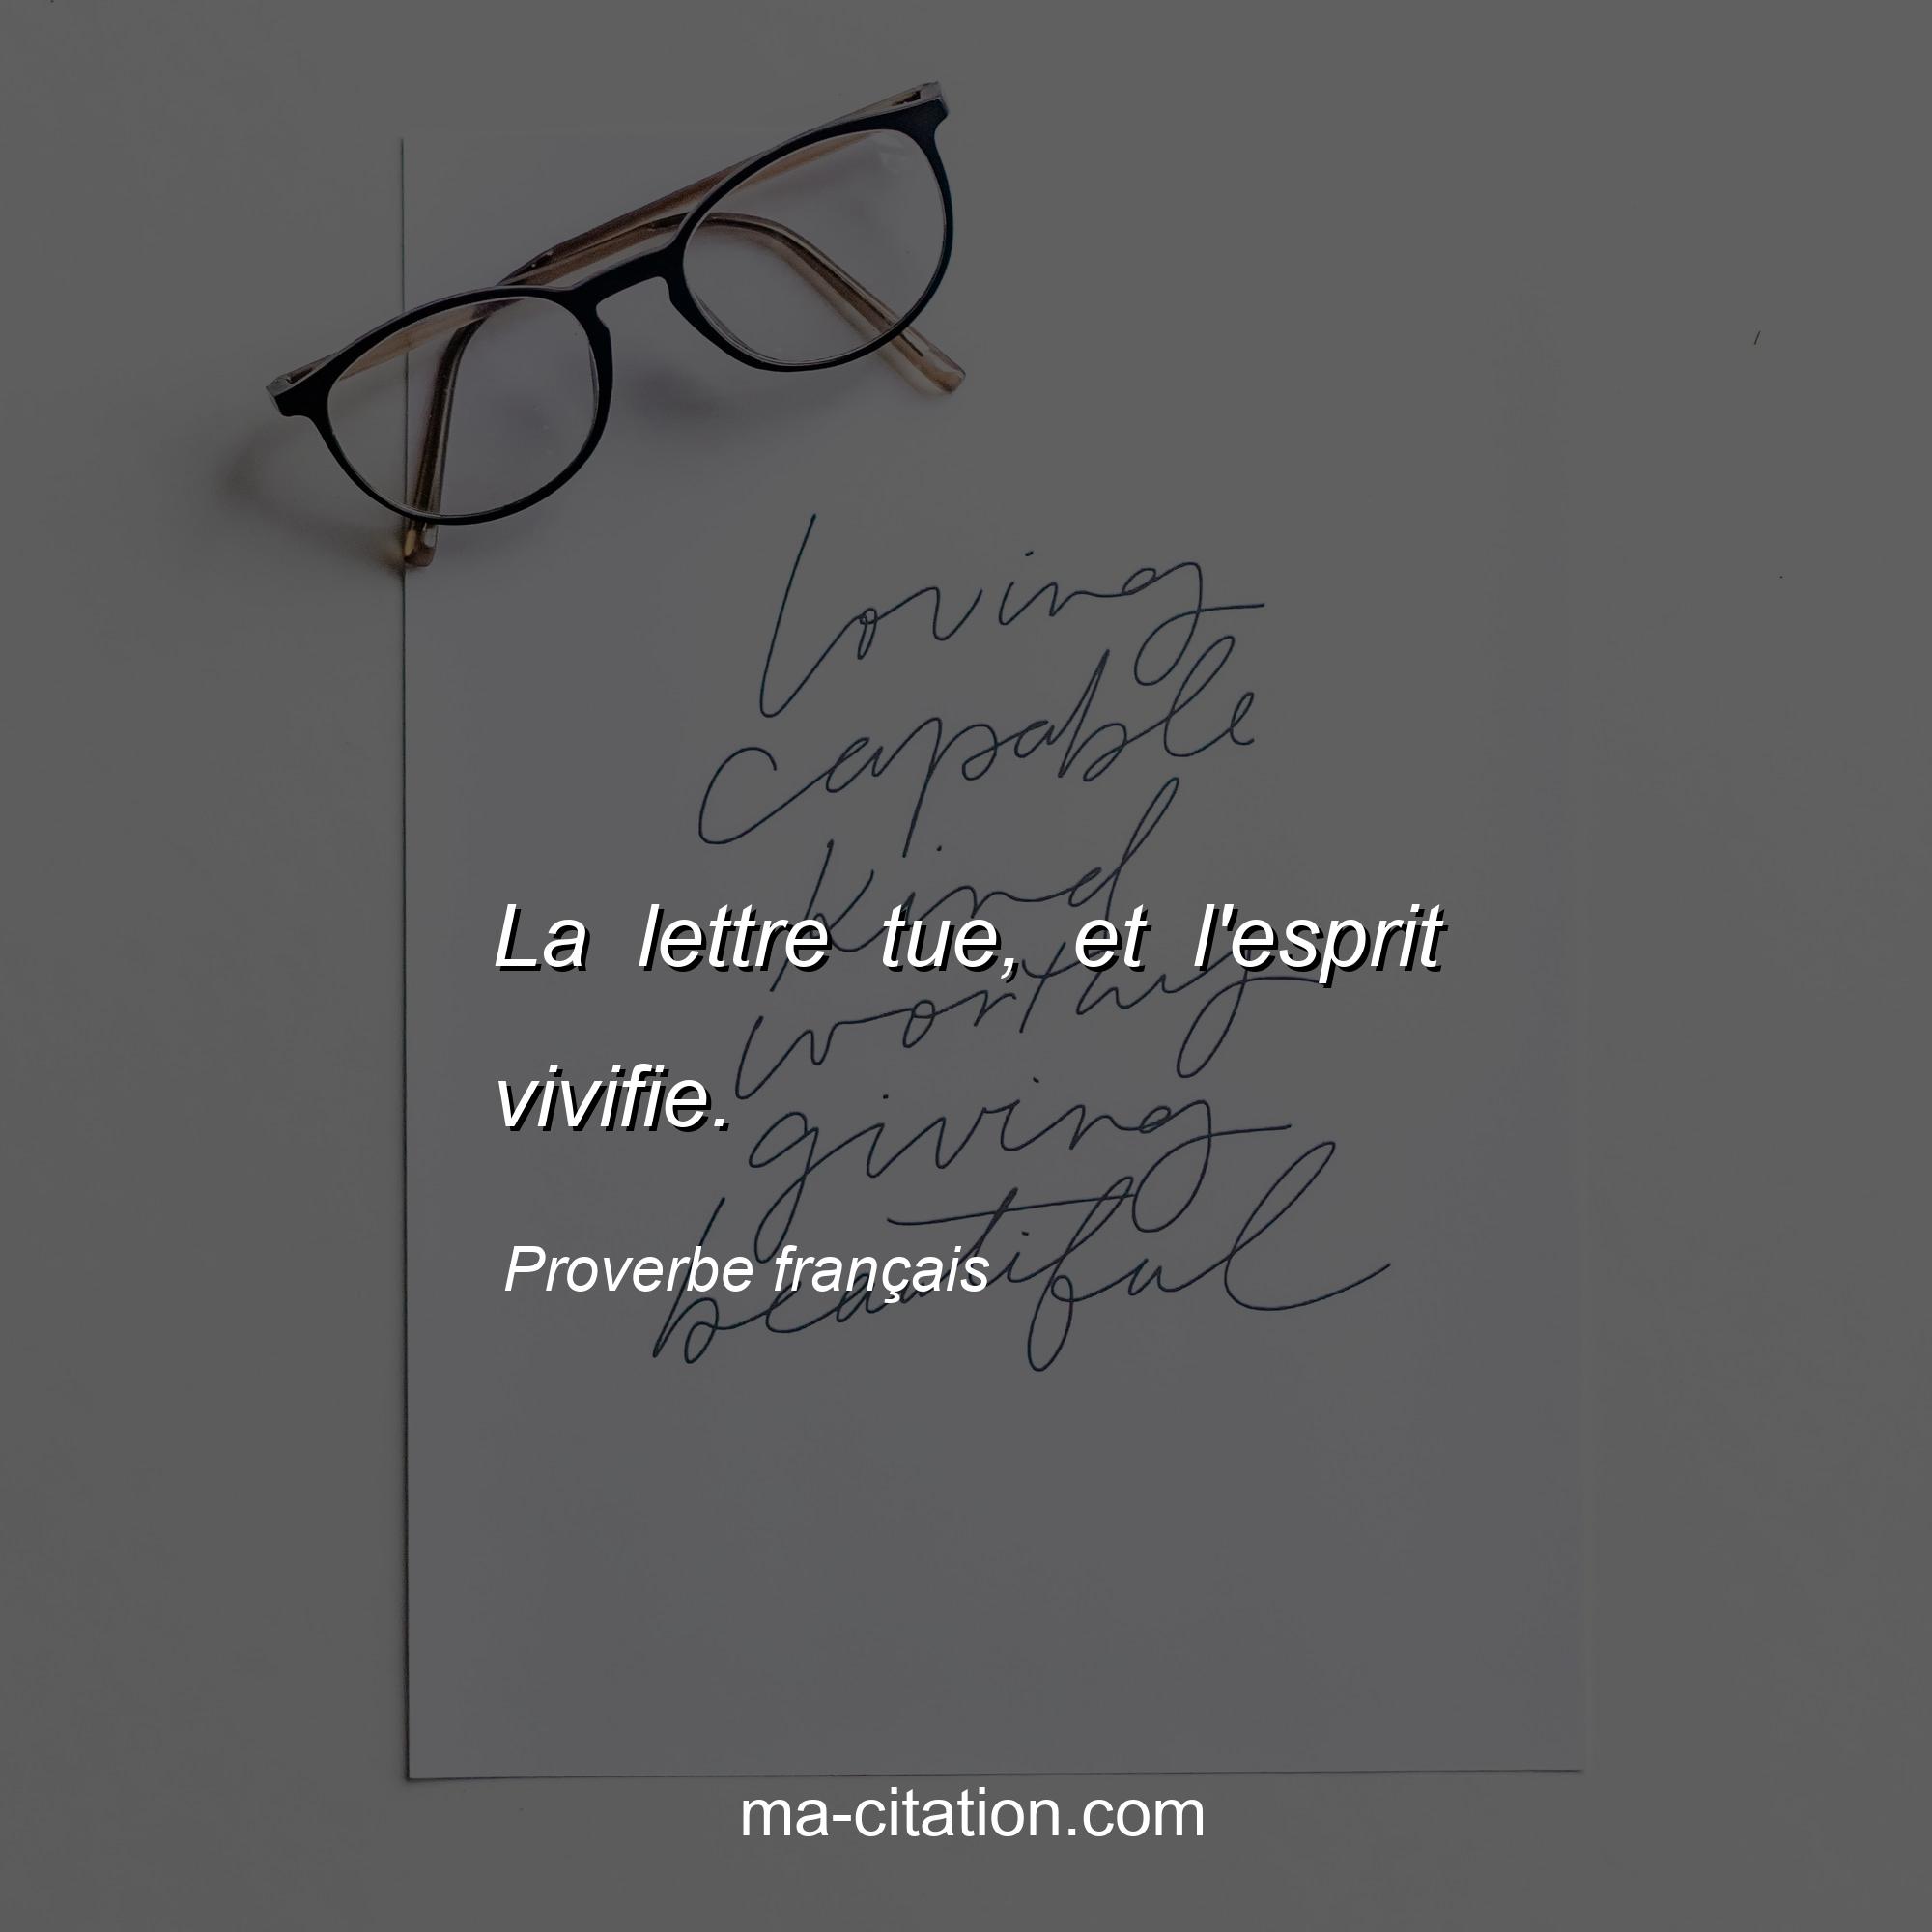 Proverbe français : La lettre tue, et l'esprit vivifie.